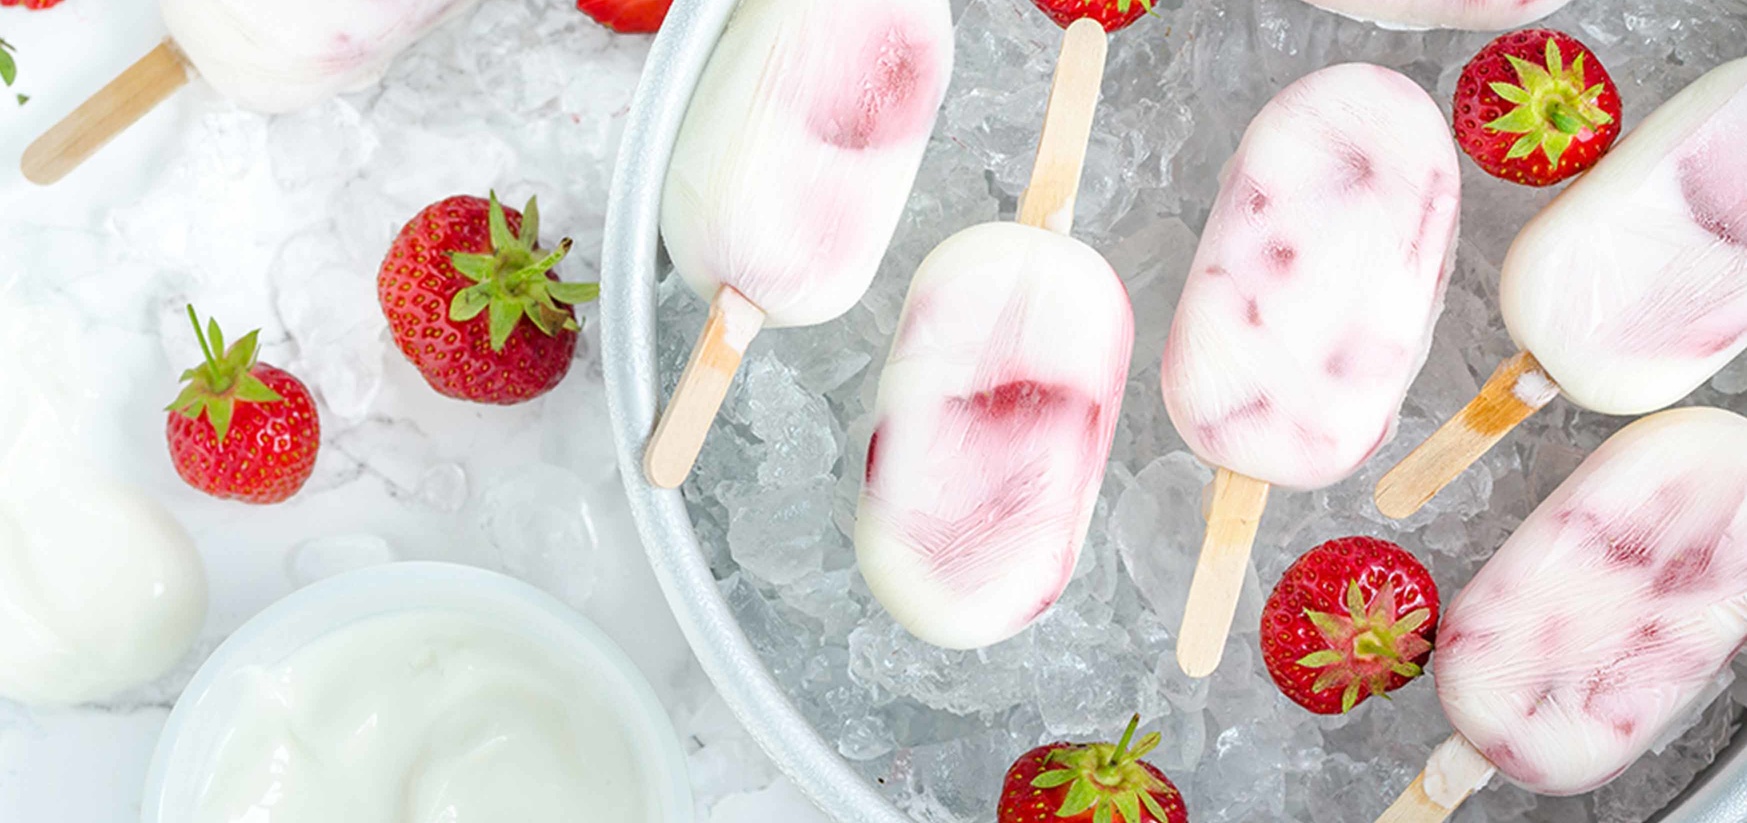 Eiskalt genießen: Joghurt-Erdbeer-Eis am Stiel